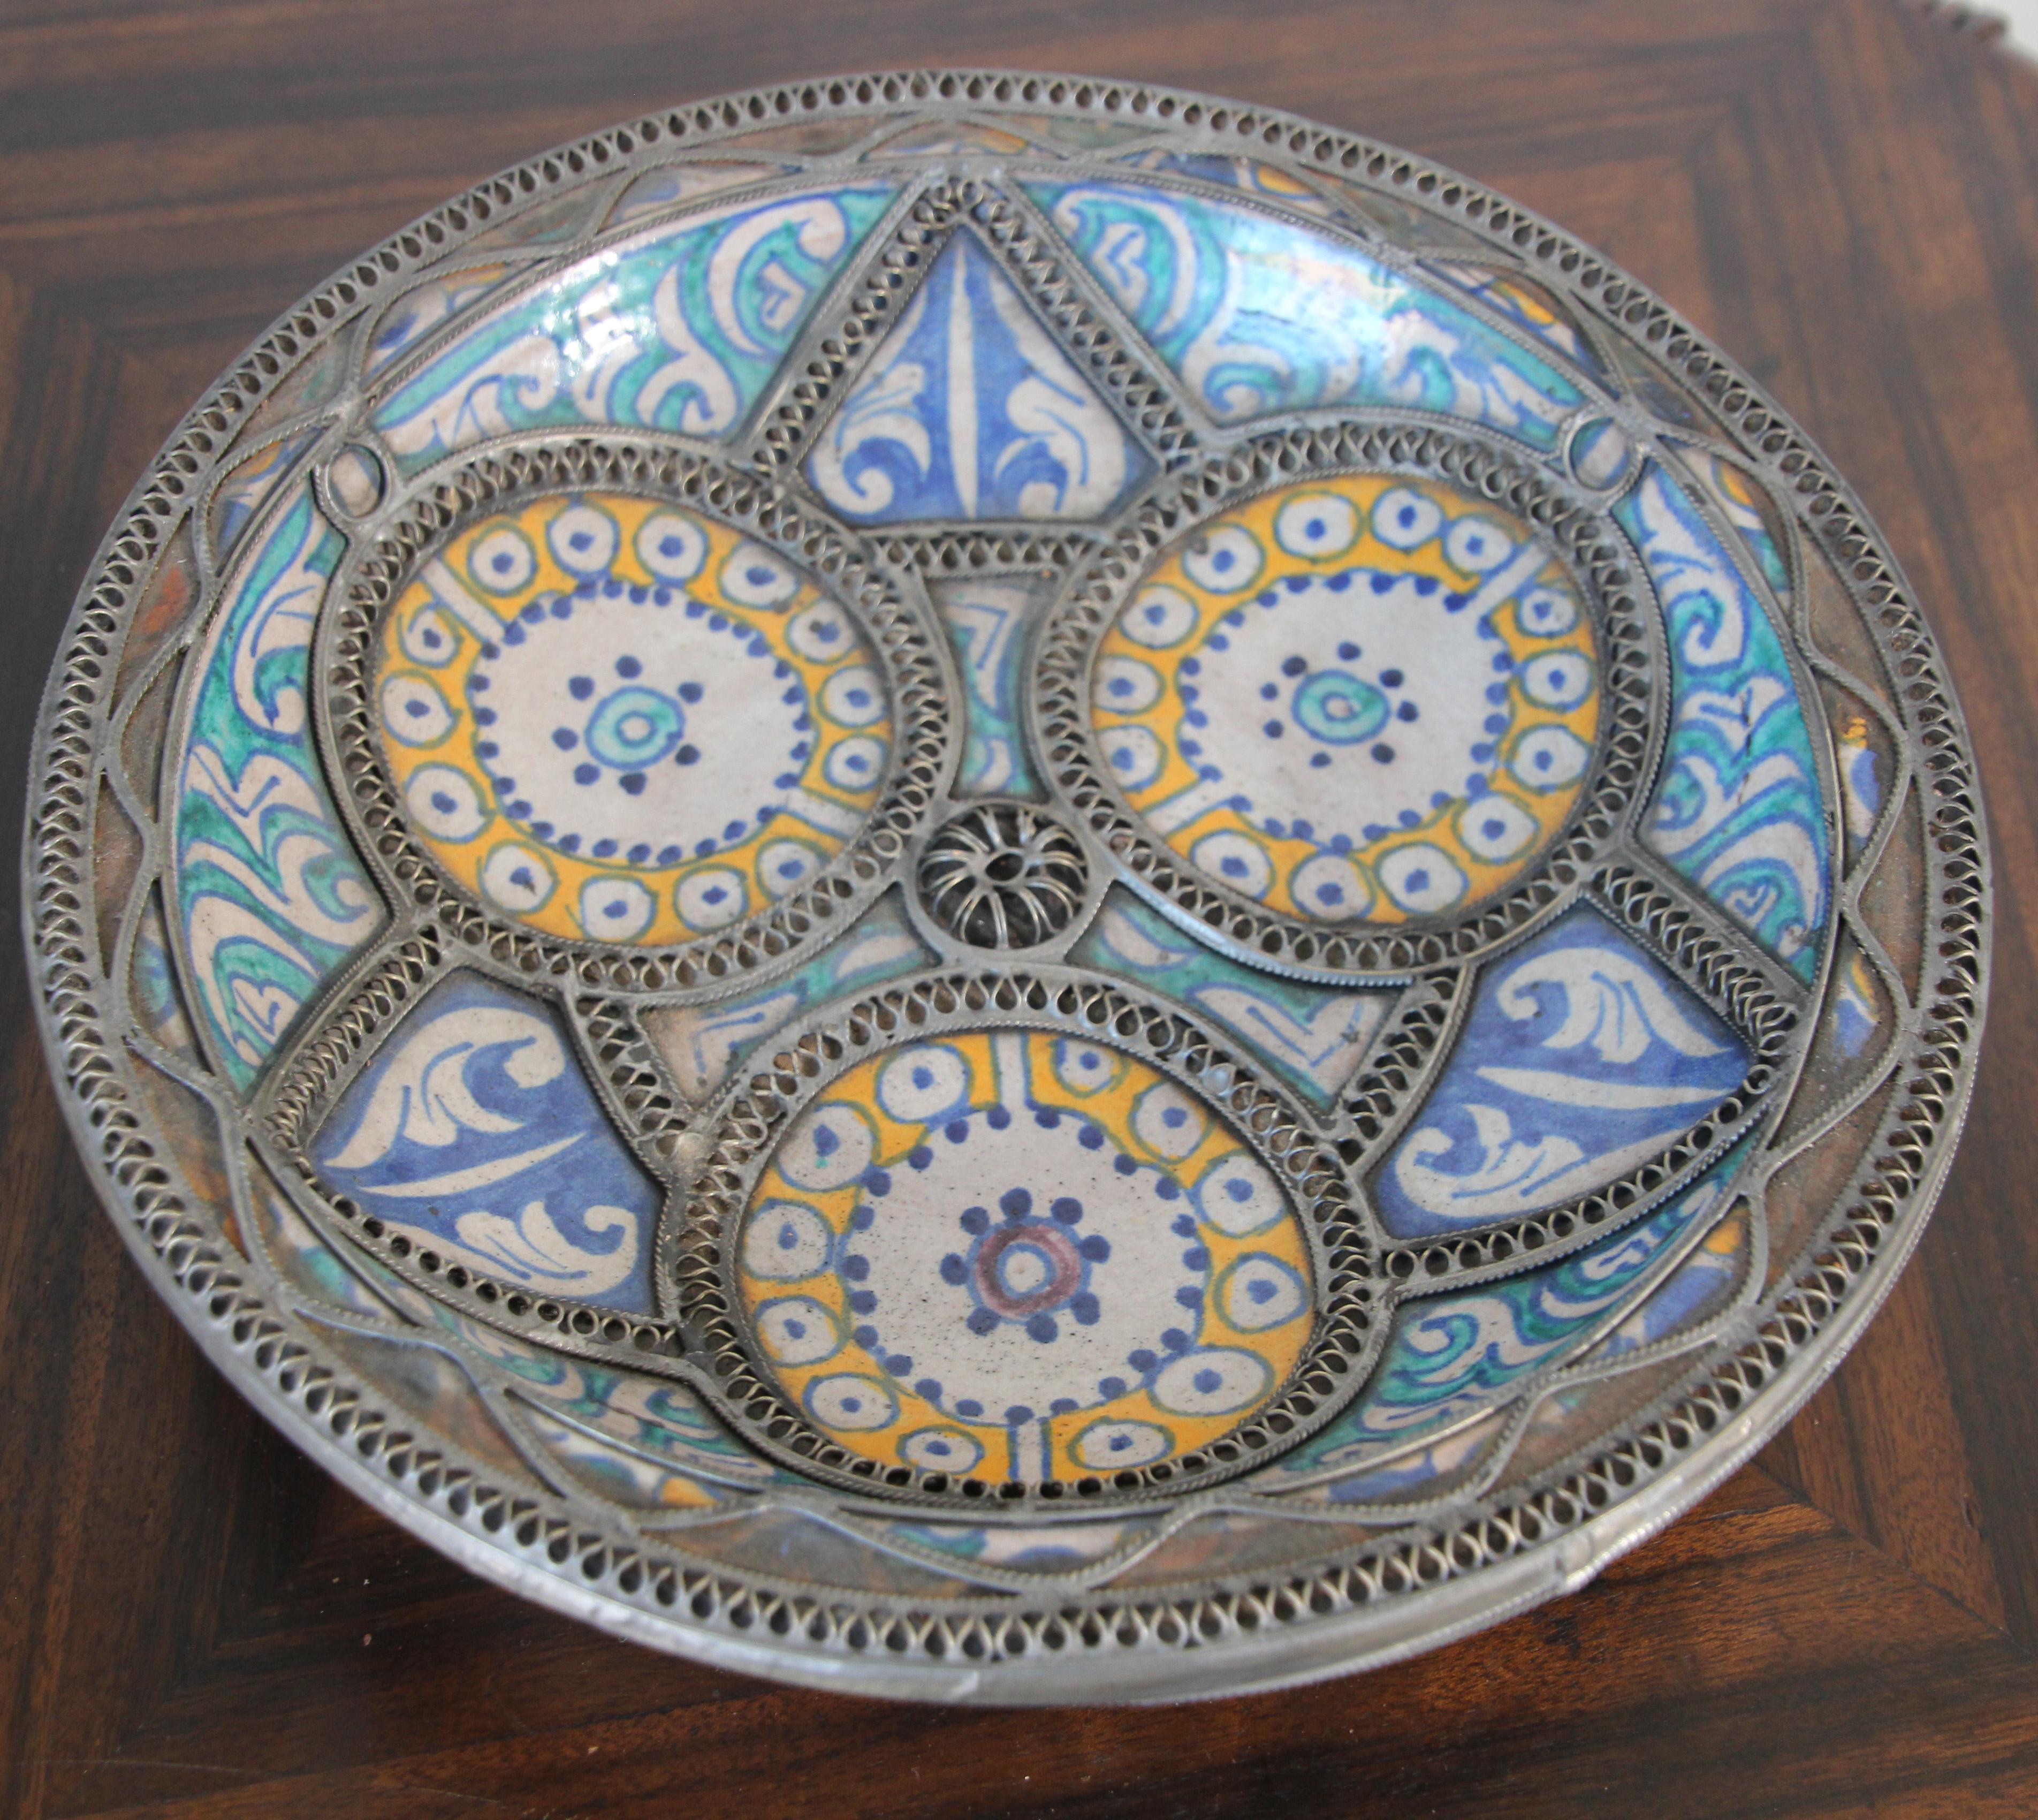 Bol, plat en céramique décorative mauresque marocaine polychrome, fabriqué à la main à Fès. 
Bleu de Fez, très beaux designs peints à la main par un artiste de Fez.
Motifs mauresques géométriques et floraux et ornés de motifs en filigrane en